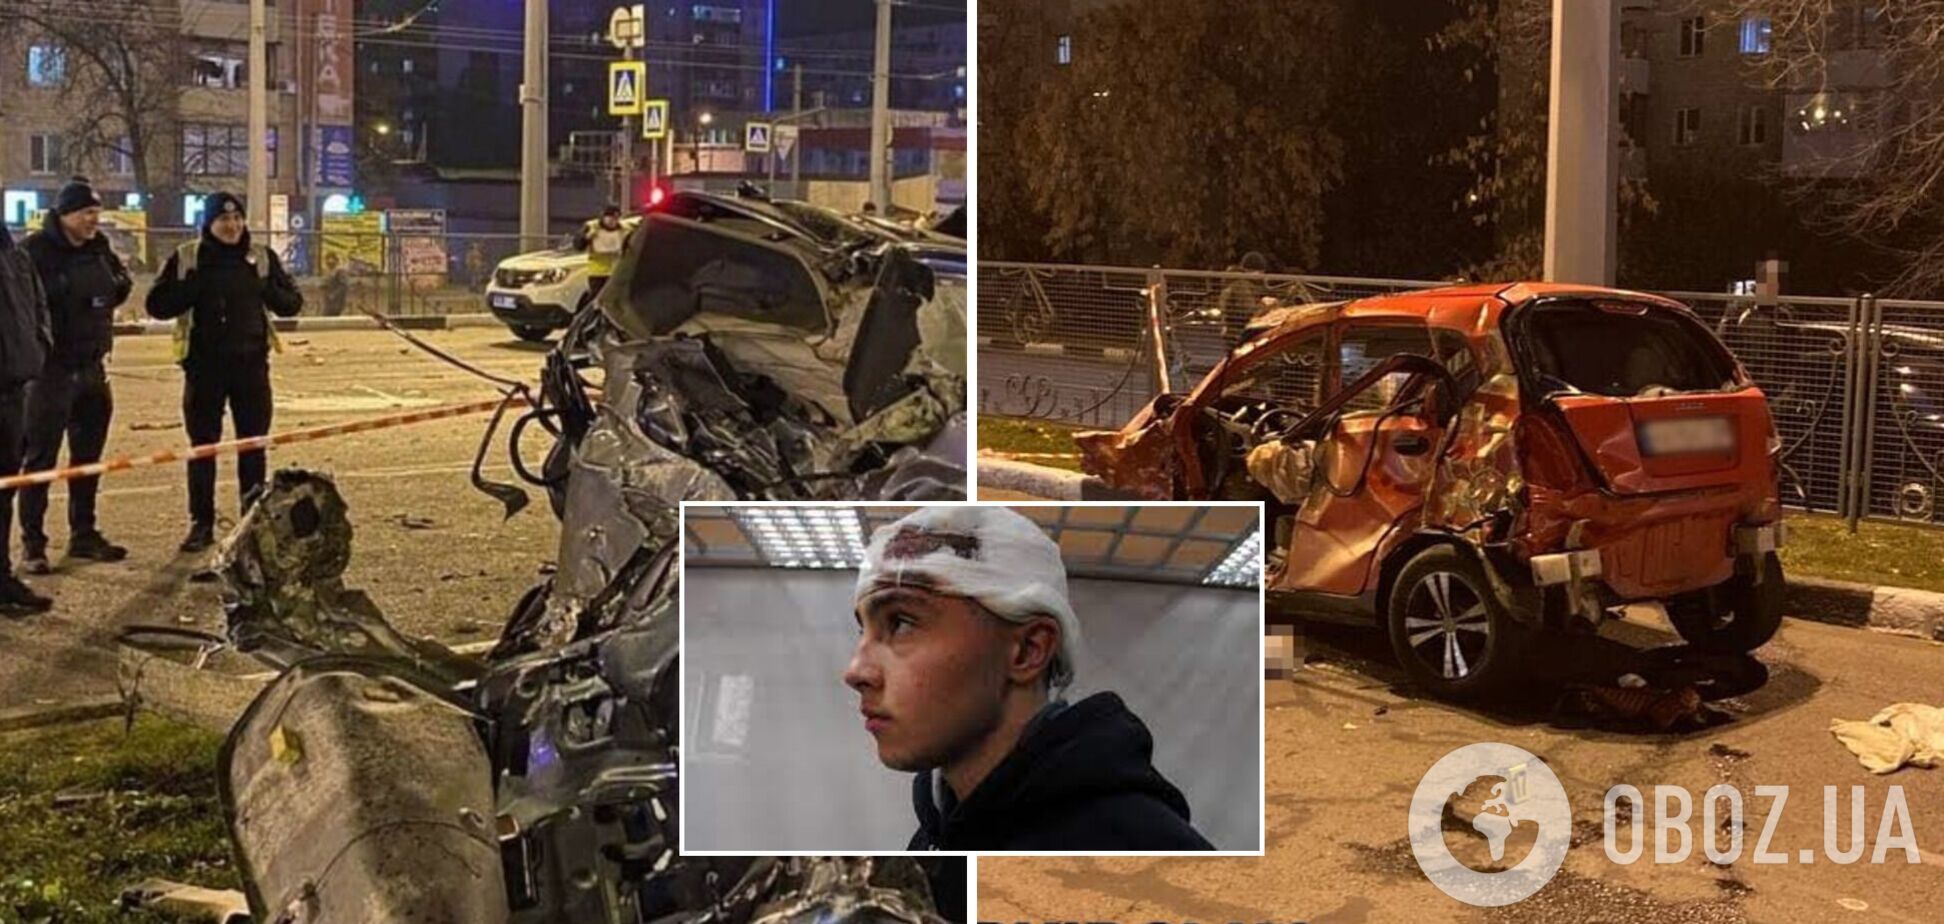 Адвокат пострадавших сказал, что тормозит расследование смертельной ДТП в Харькове